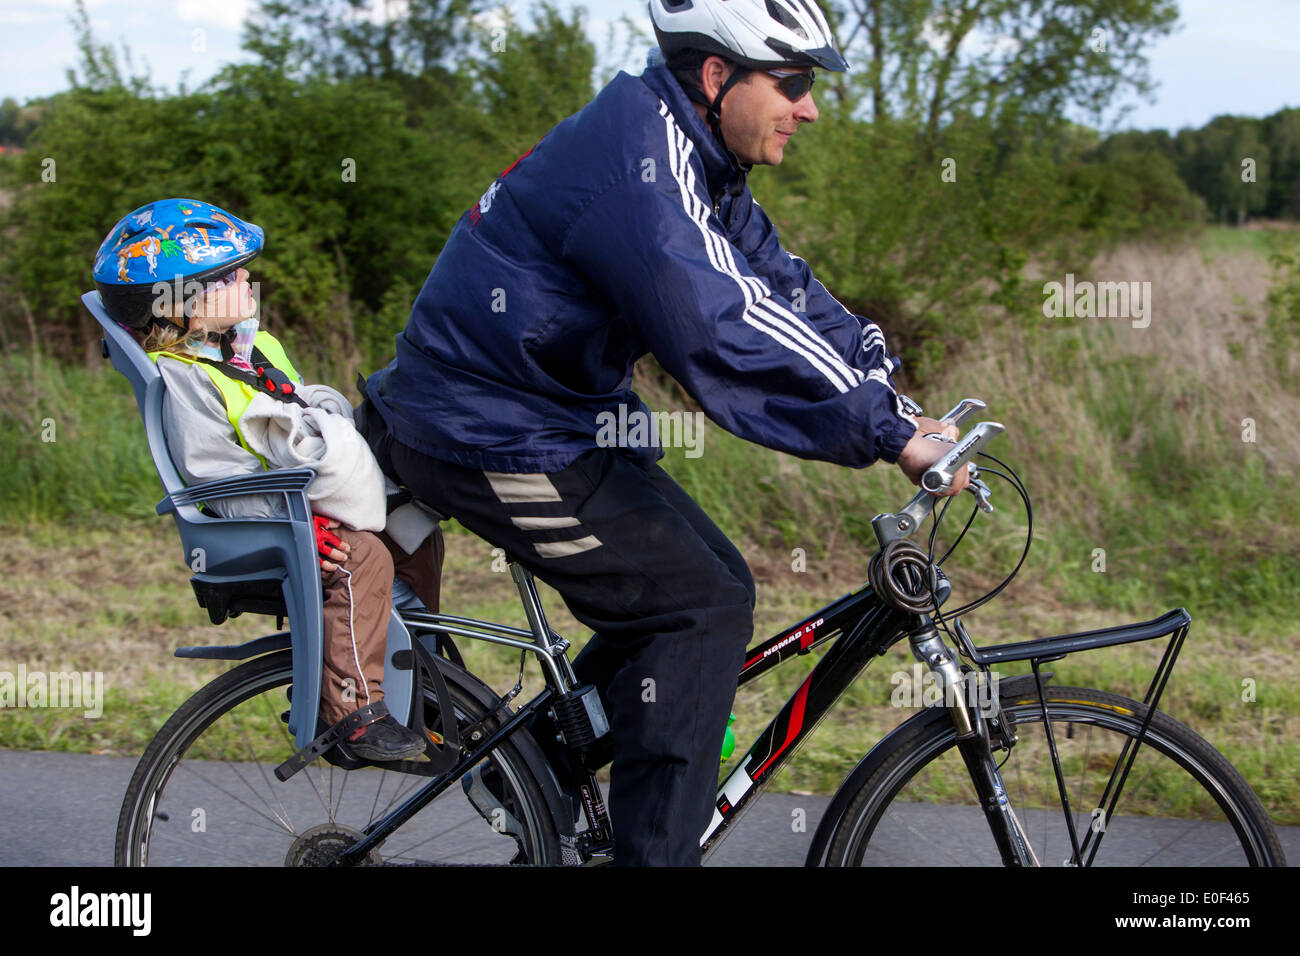 Paseo de hombre y niño, casco de bicicleta, sendero para bicicletas, niño en el asiento de bicicleta Foto de stock